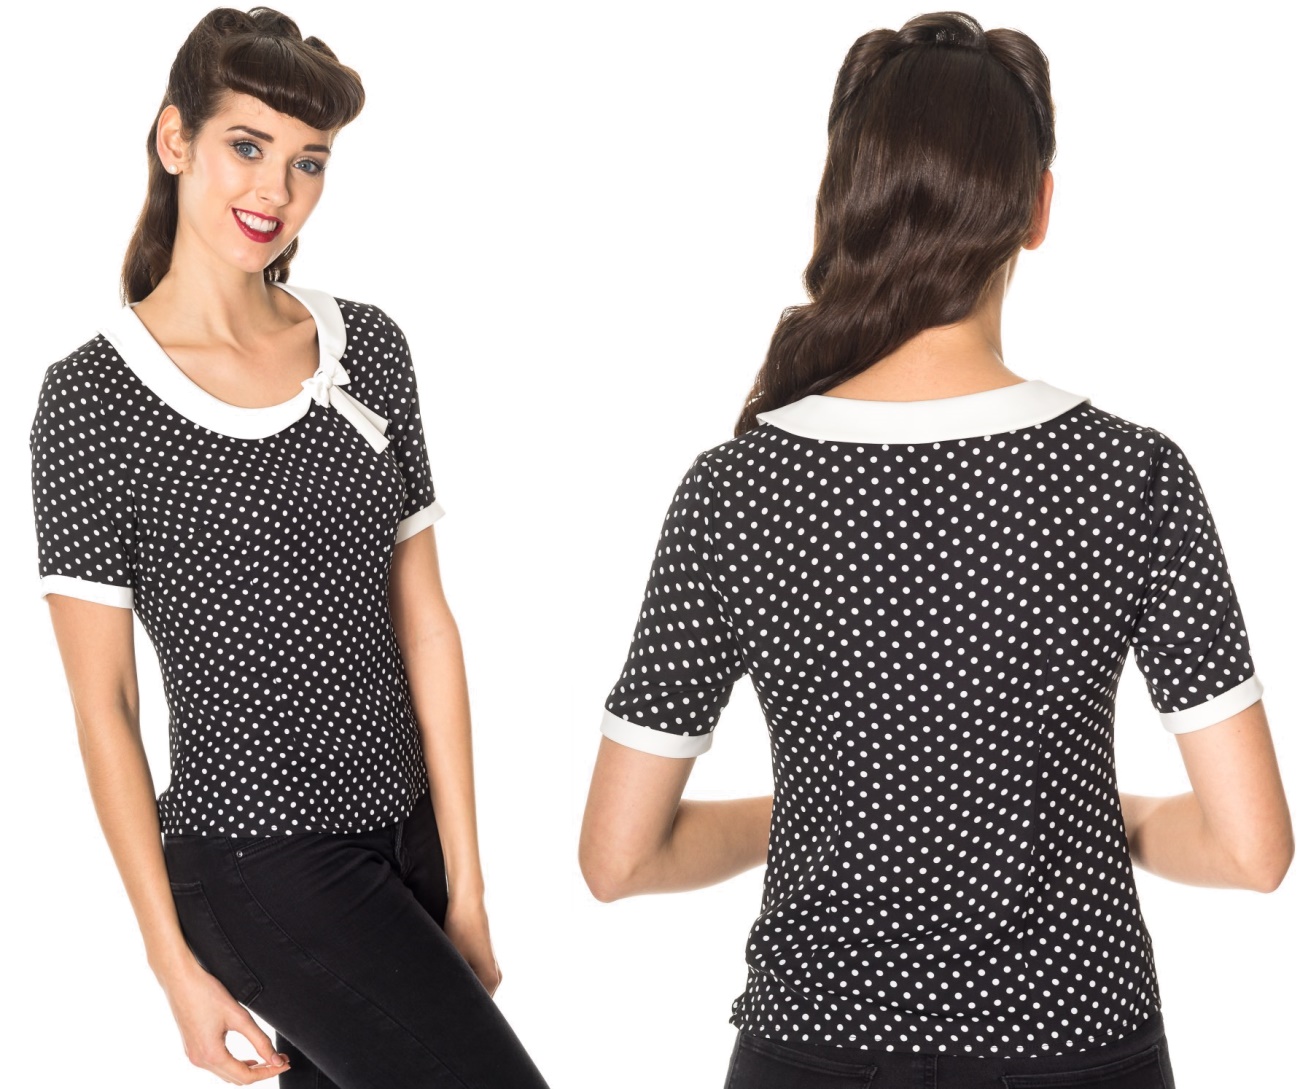 Damen T-Shirt Polkadot im Stil der 50/60iger Jahre Banned